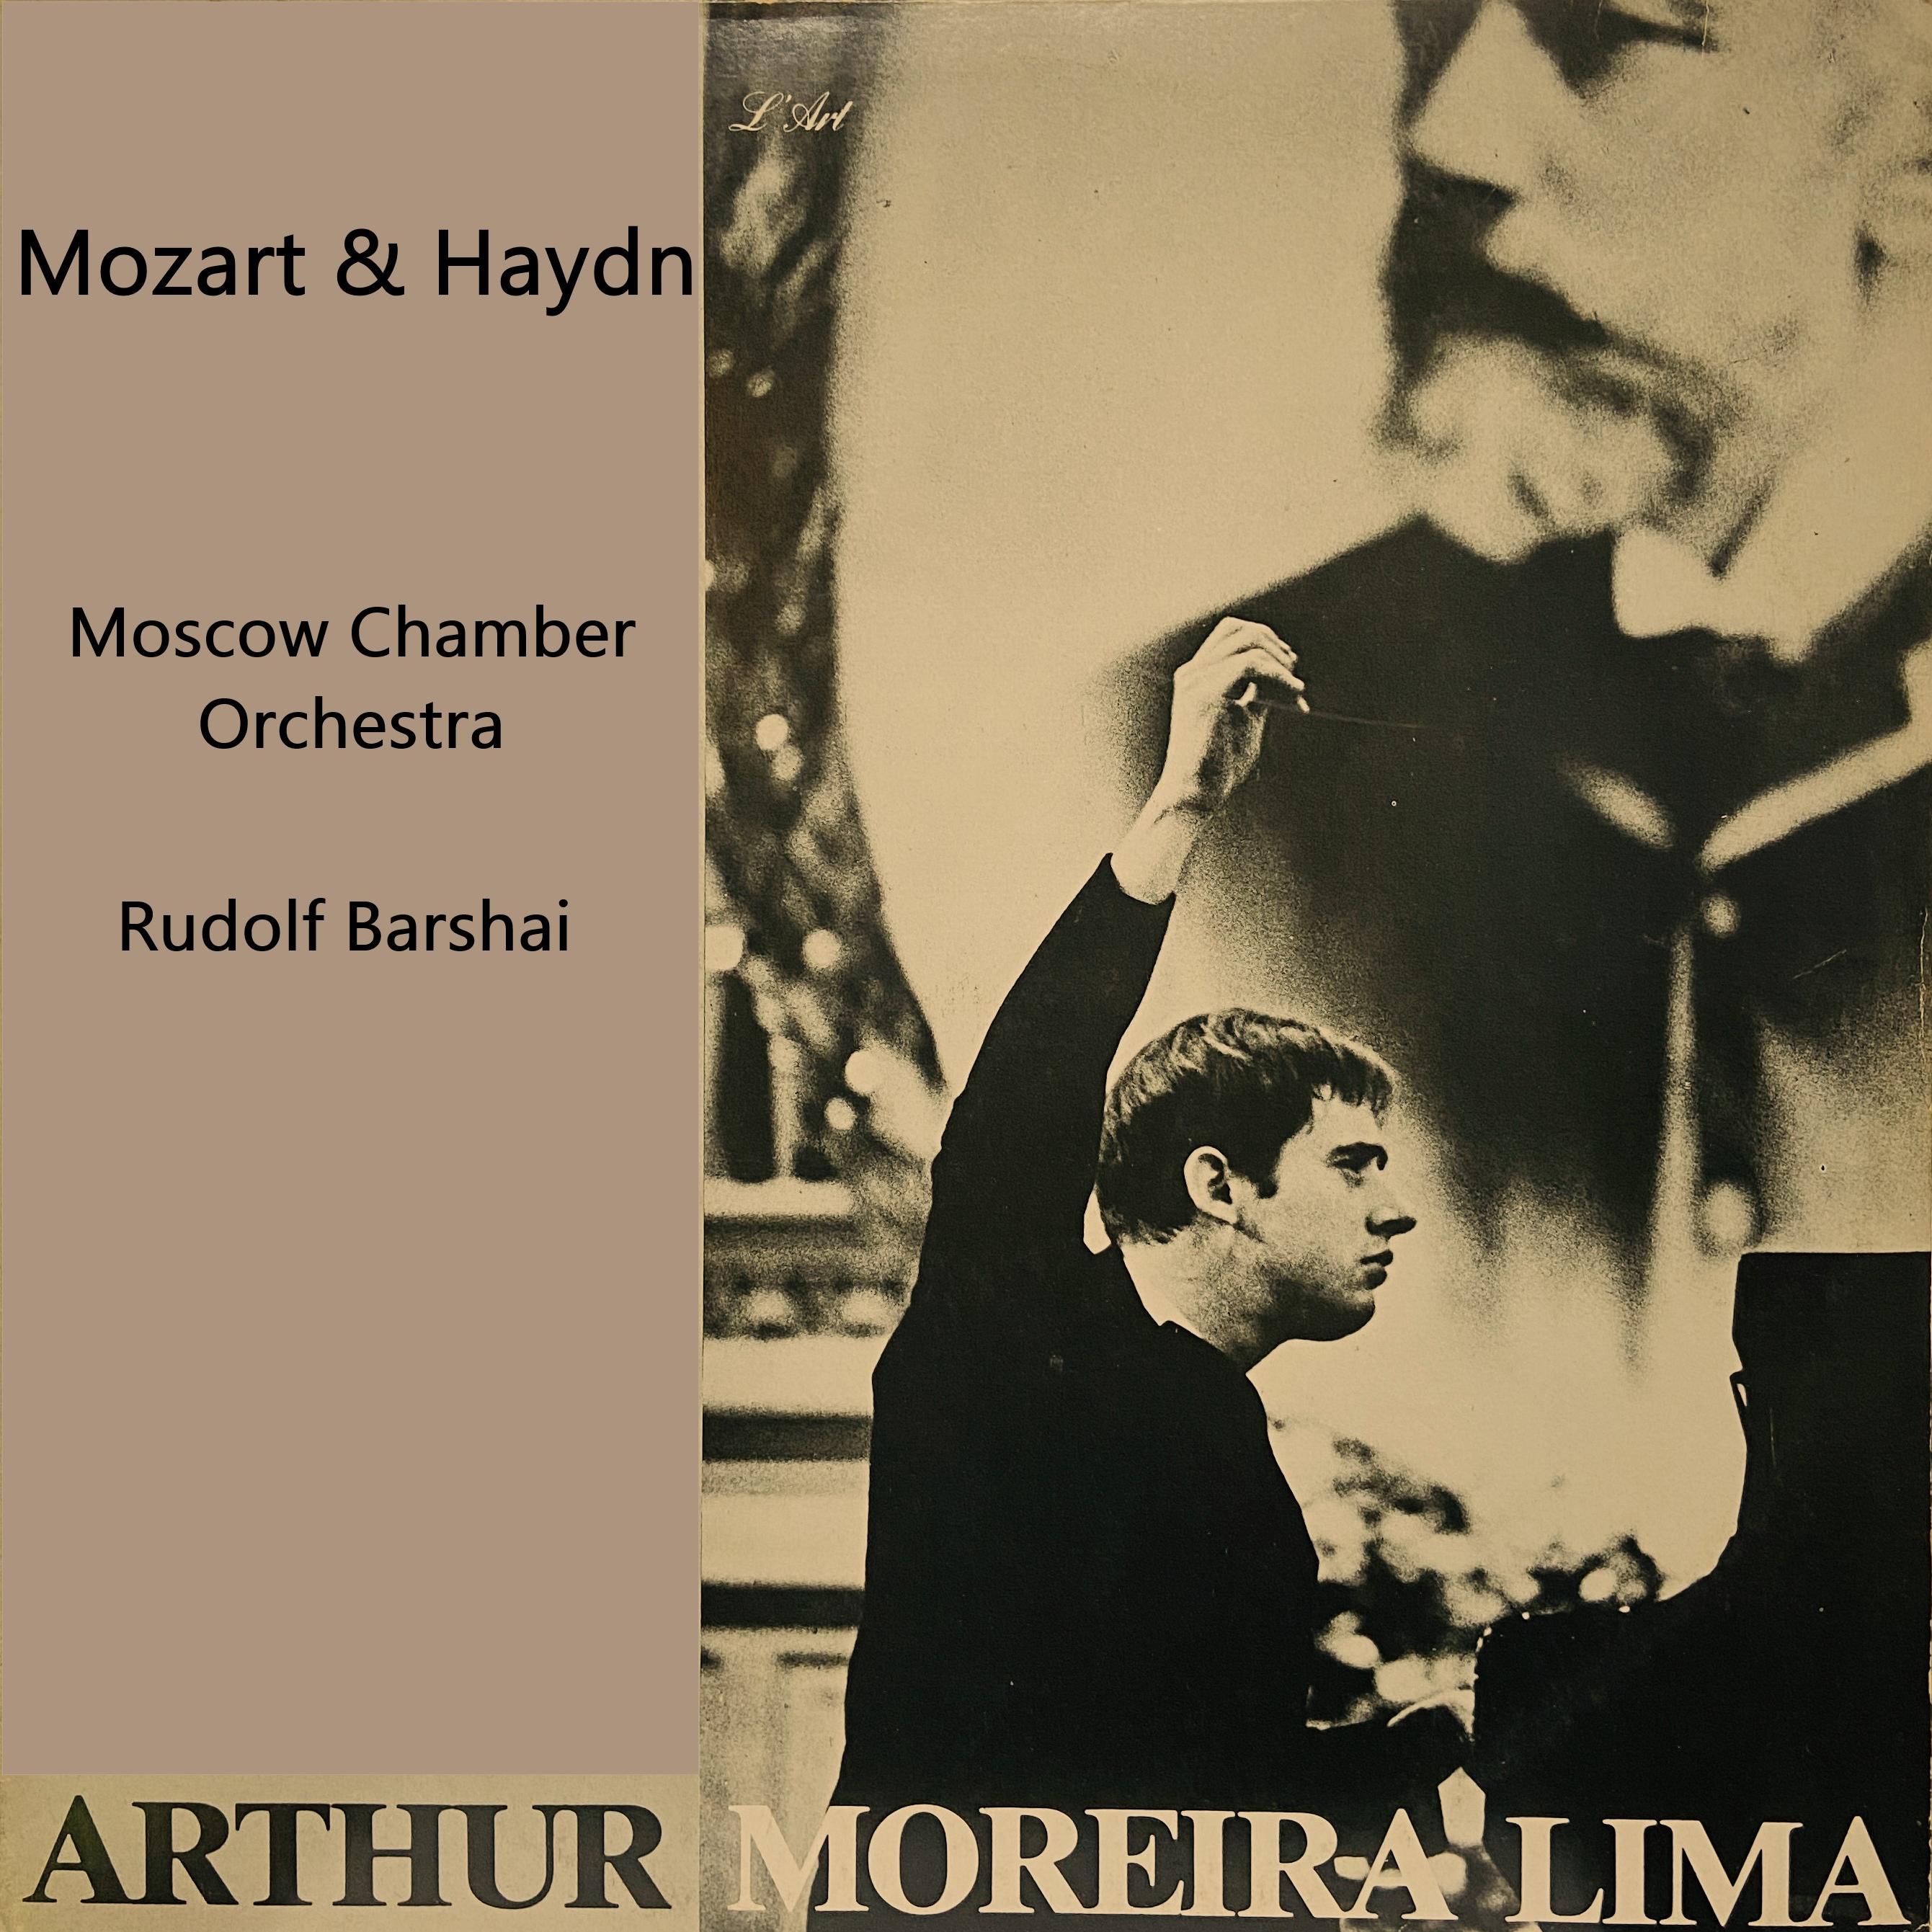 Rudolf Barshai - Concerto in G Major, Hob. XVIII 4:III. Presto